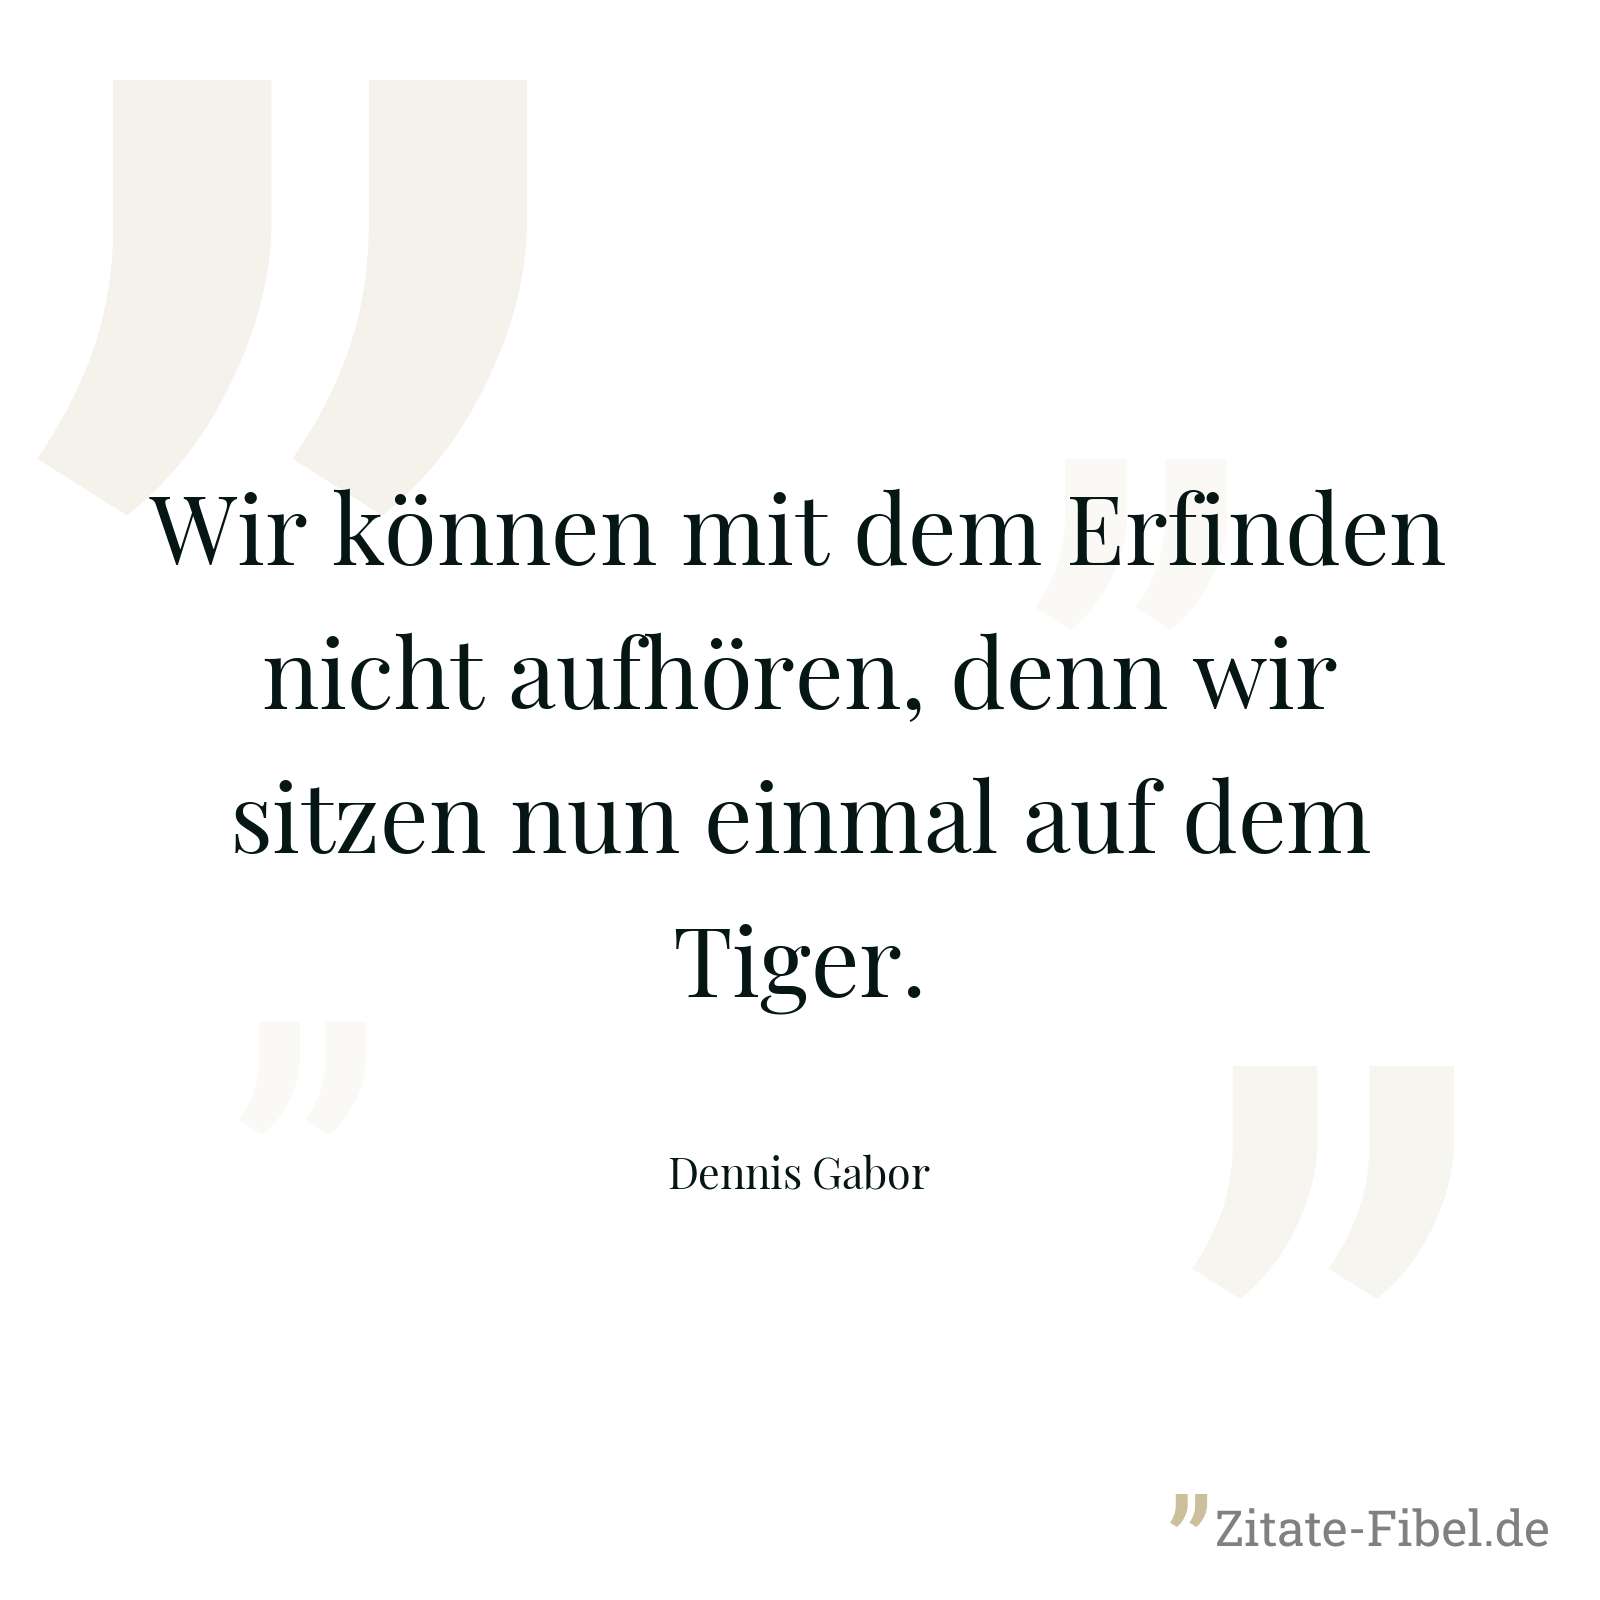 Wir können mit dem Erfinden nicht aufhören, denn wir sitzen nun einmal auf dem Tiger. - Dennis Gabor